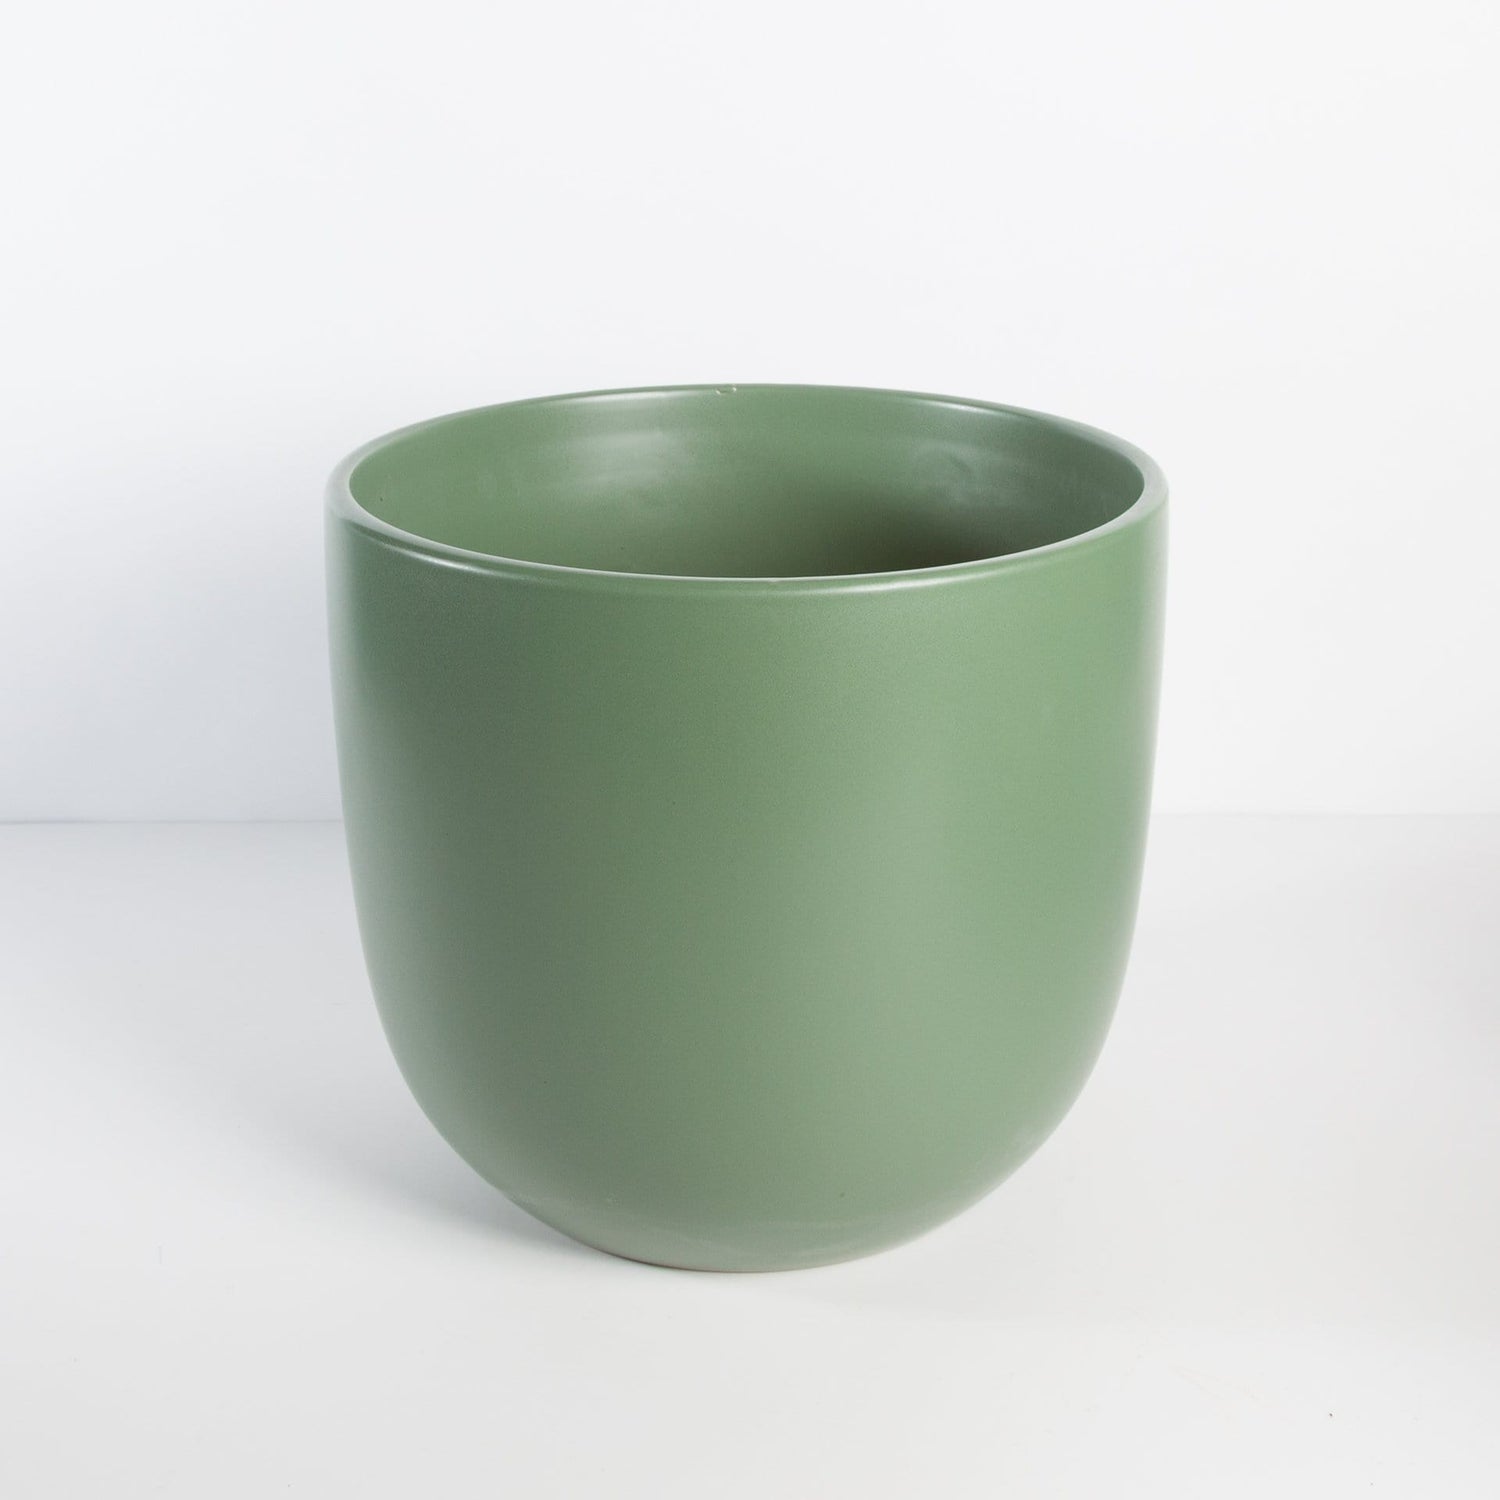 Peach & Pebble Pot 10" / green Curve Ceramic Pot